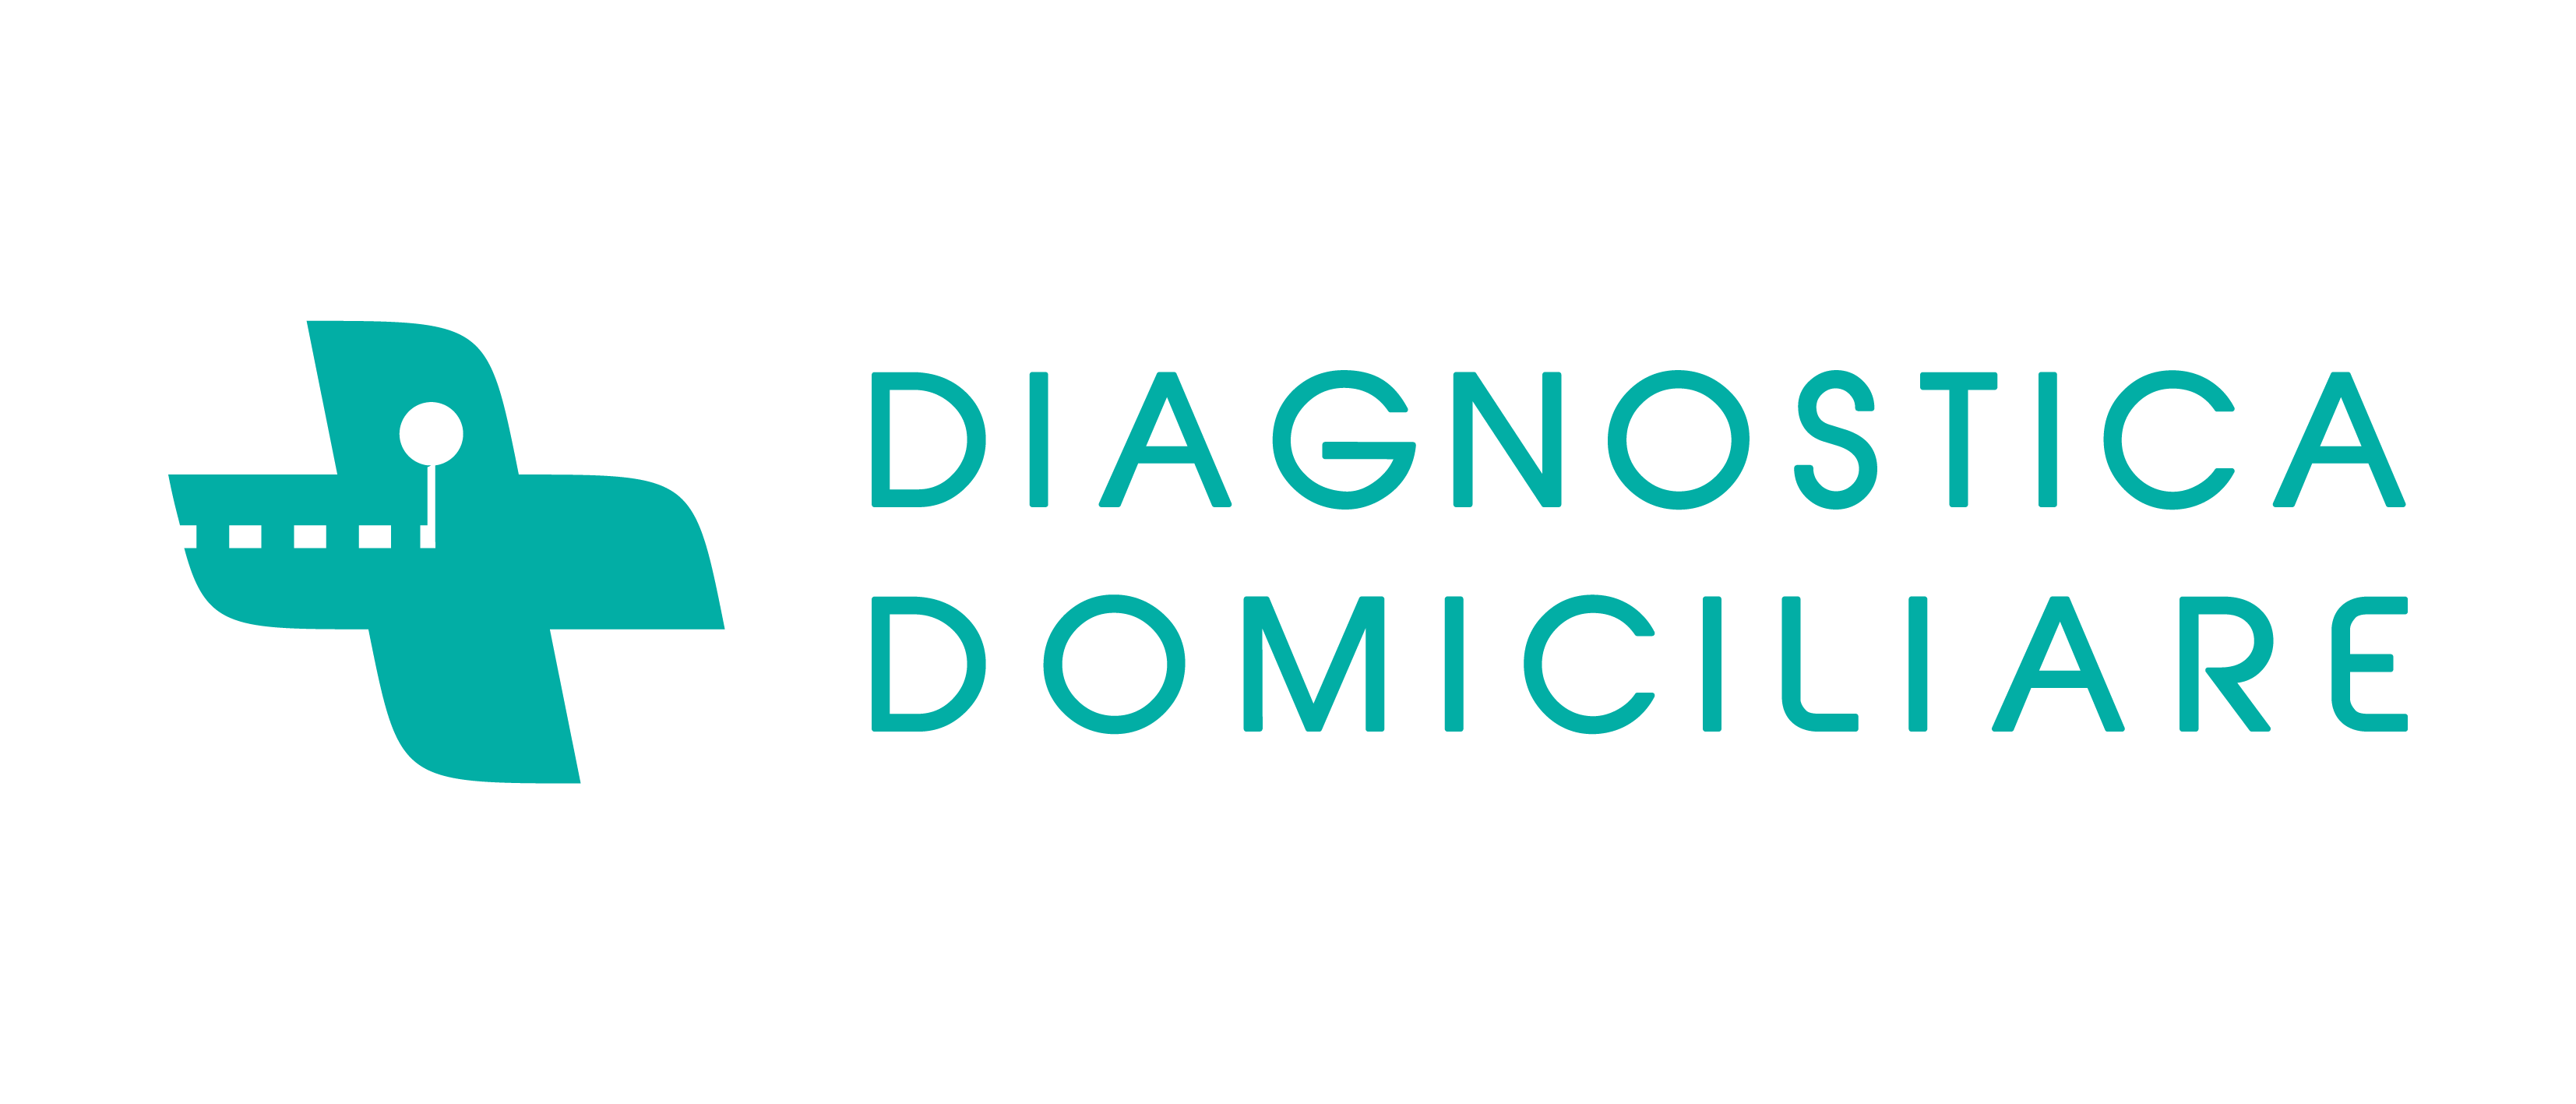 Diagnostica Domiciliare